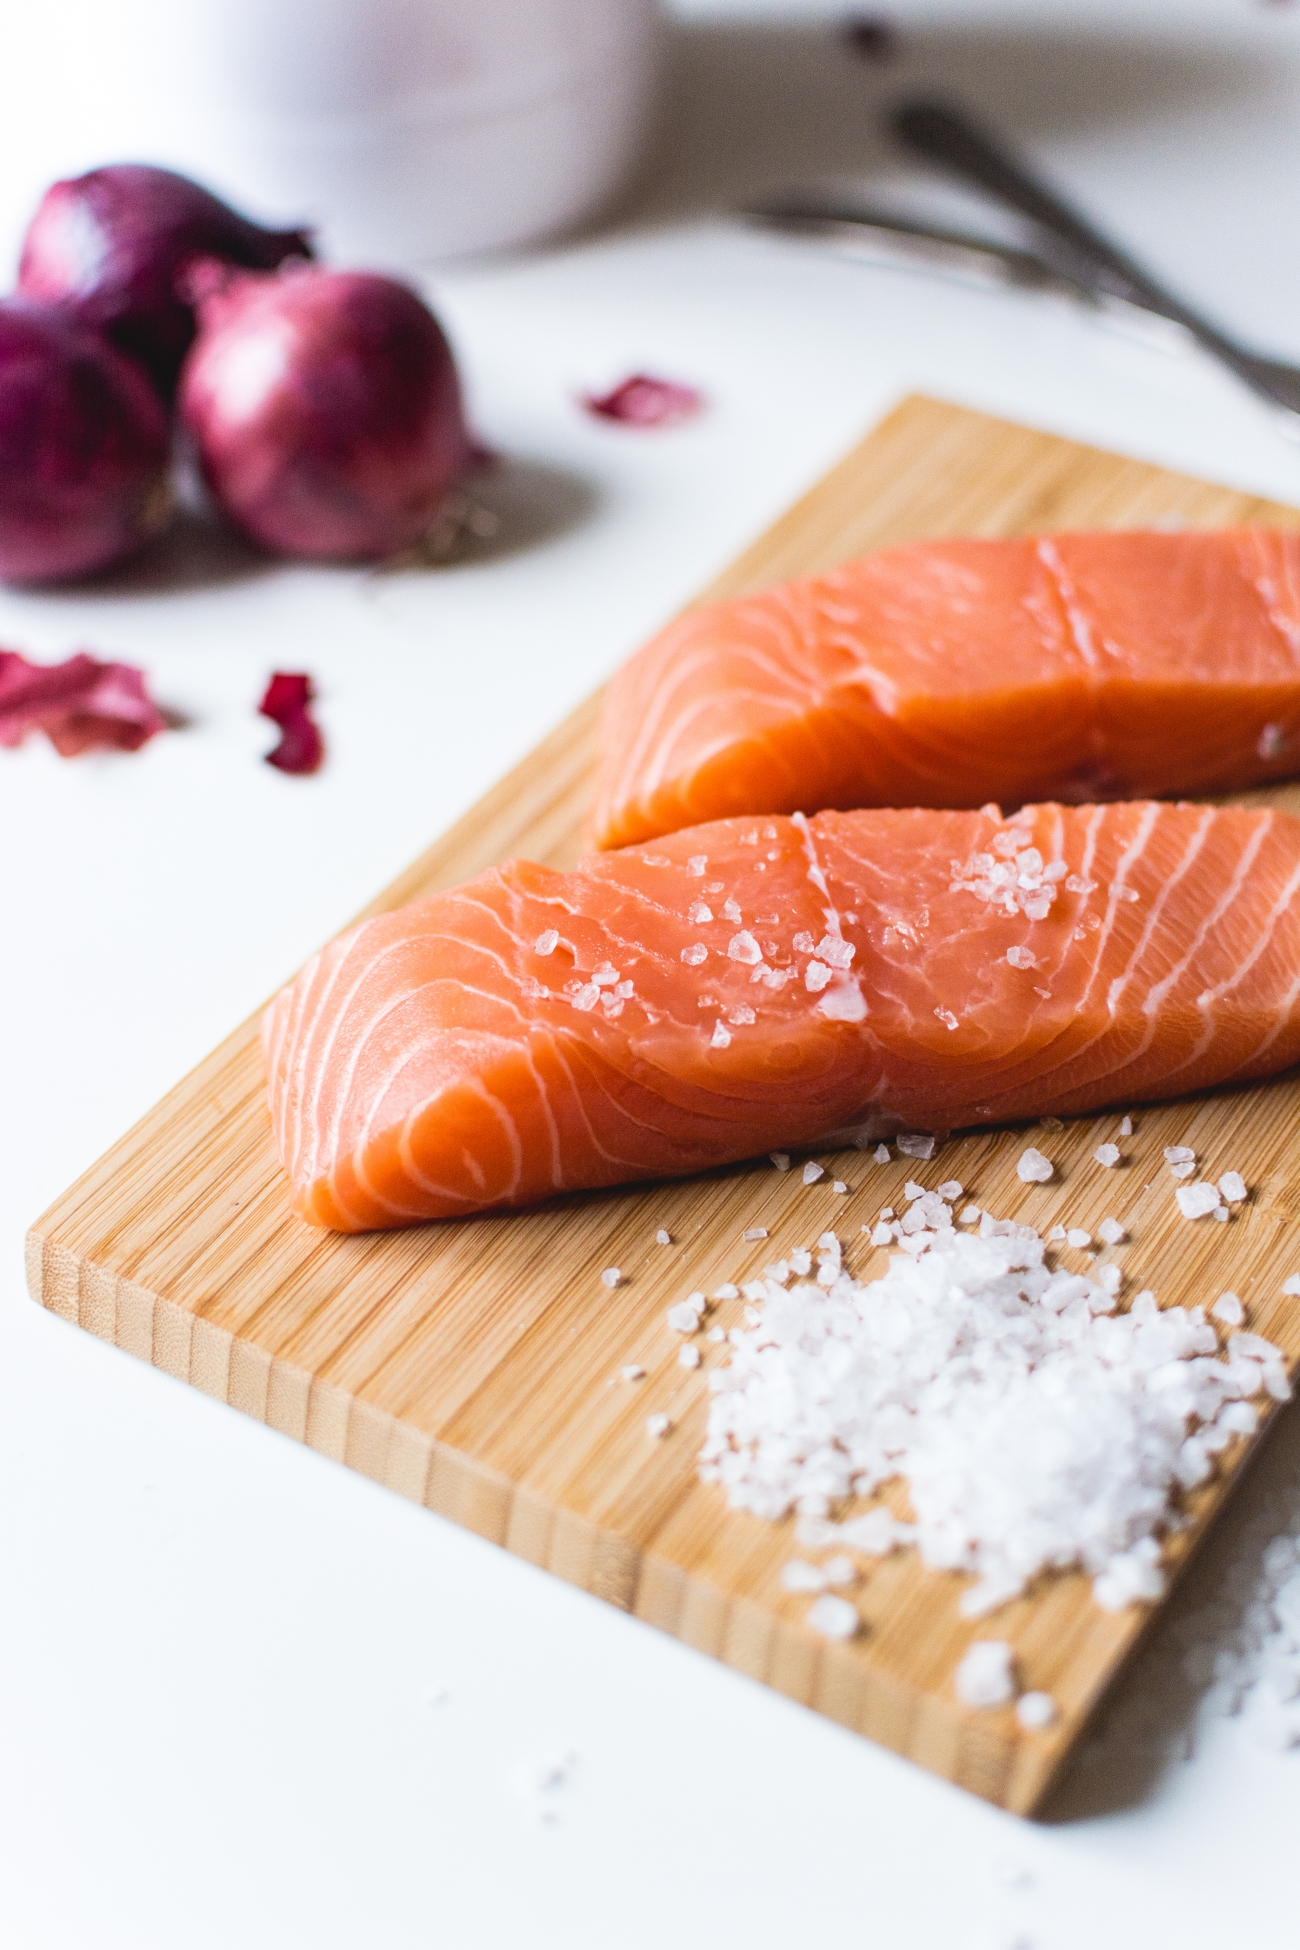 鮭の種類や産地で異なる味わいを徹底解説 使い分けておいしく食べよう E レシピ 料理のプロが作る簡単レシピ 1 1ページ